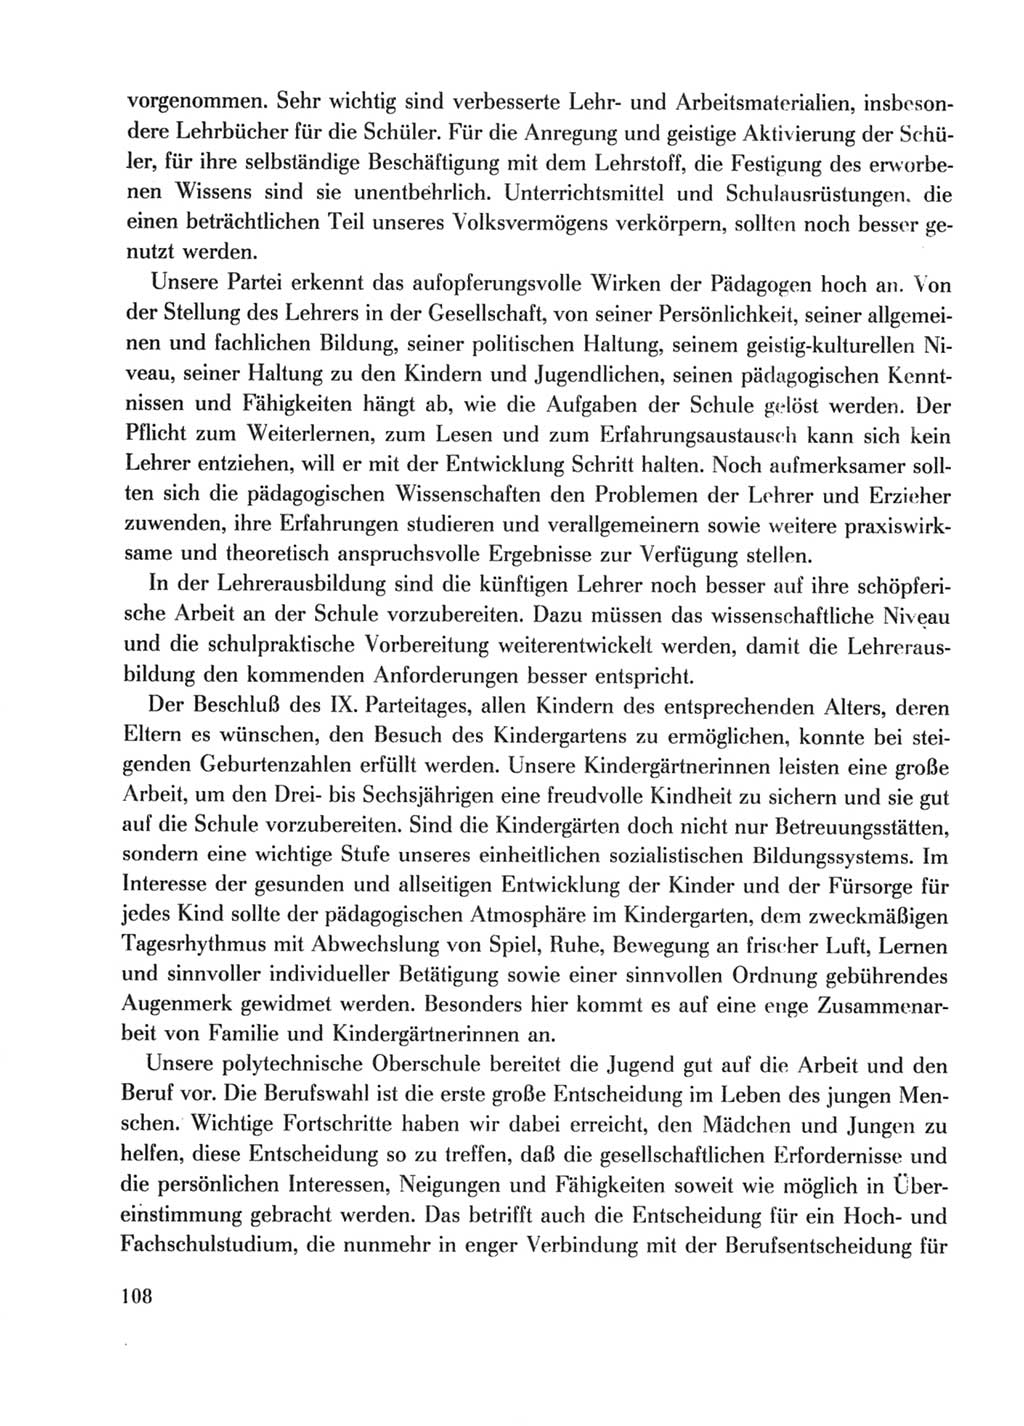 Protokoll der Verhandlungen des Ⅹ. Parteitages der Sozialistischen Einheitspartei Deutschlands (SED) [Deutsche Demokratische Republik (DDR)] 1981, Band 1, Seite 108 (Prot. Verh. Ⅹ. PT SED DDR 1981, Bd. 1, S. 108)